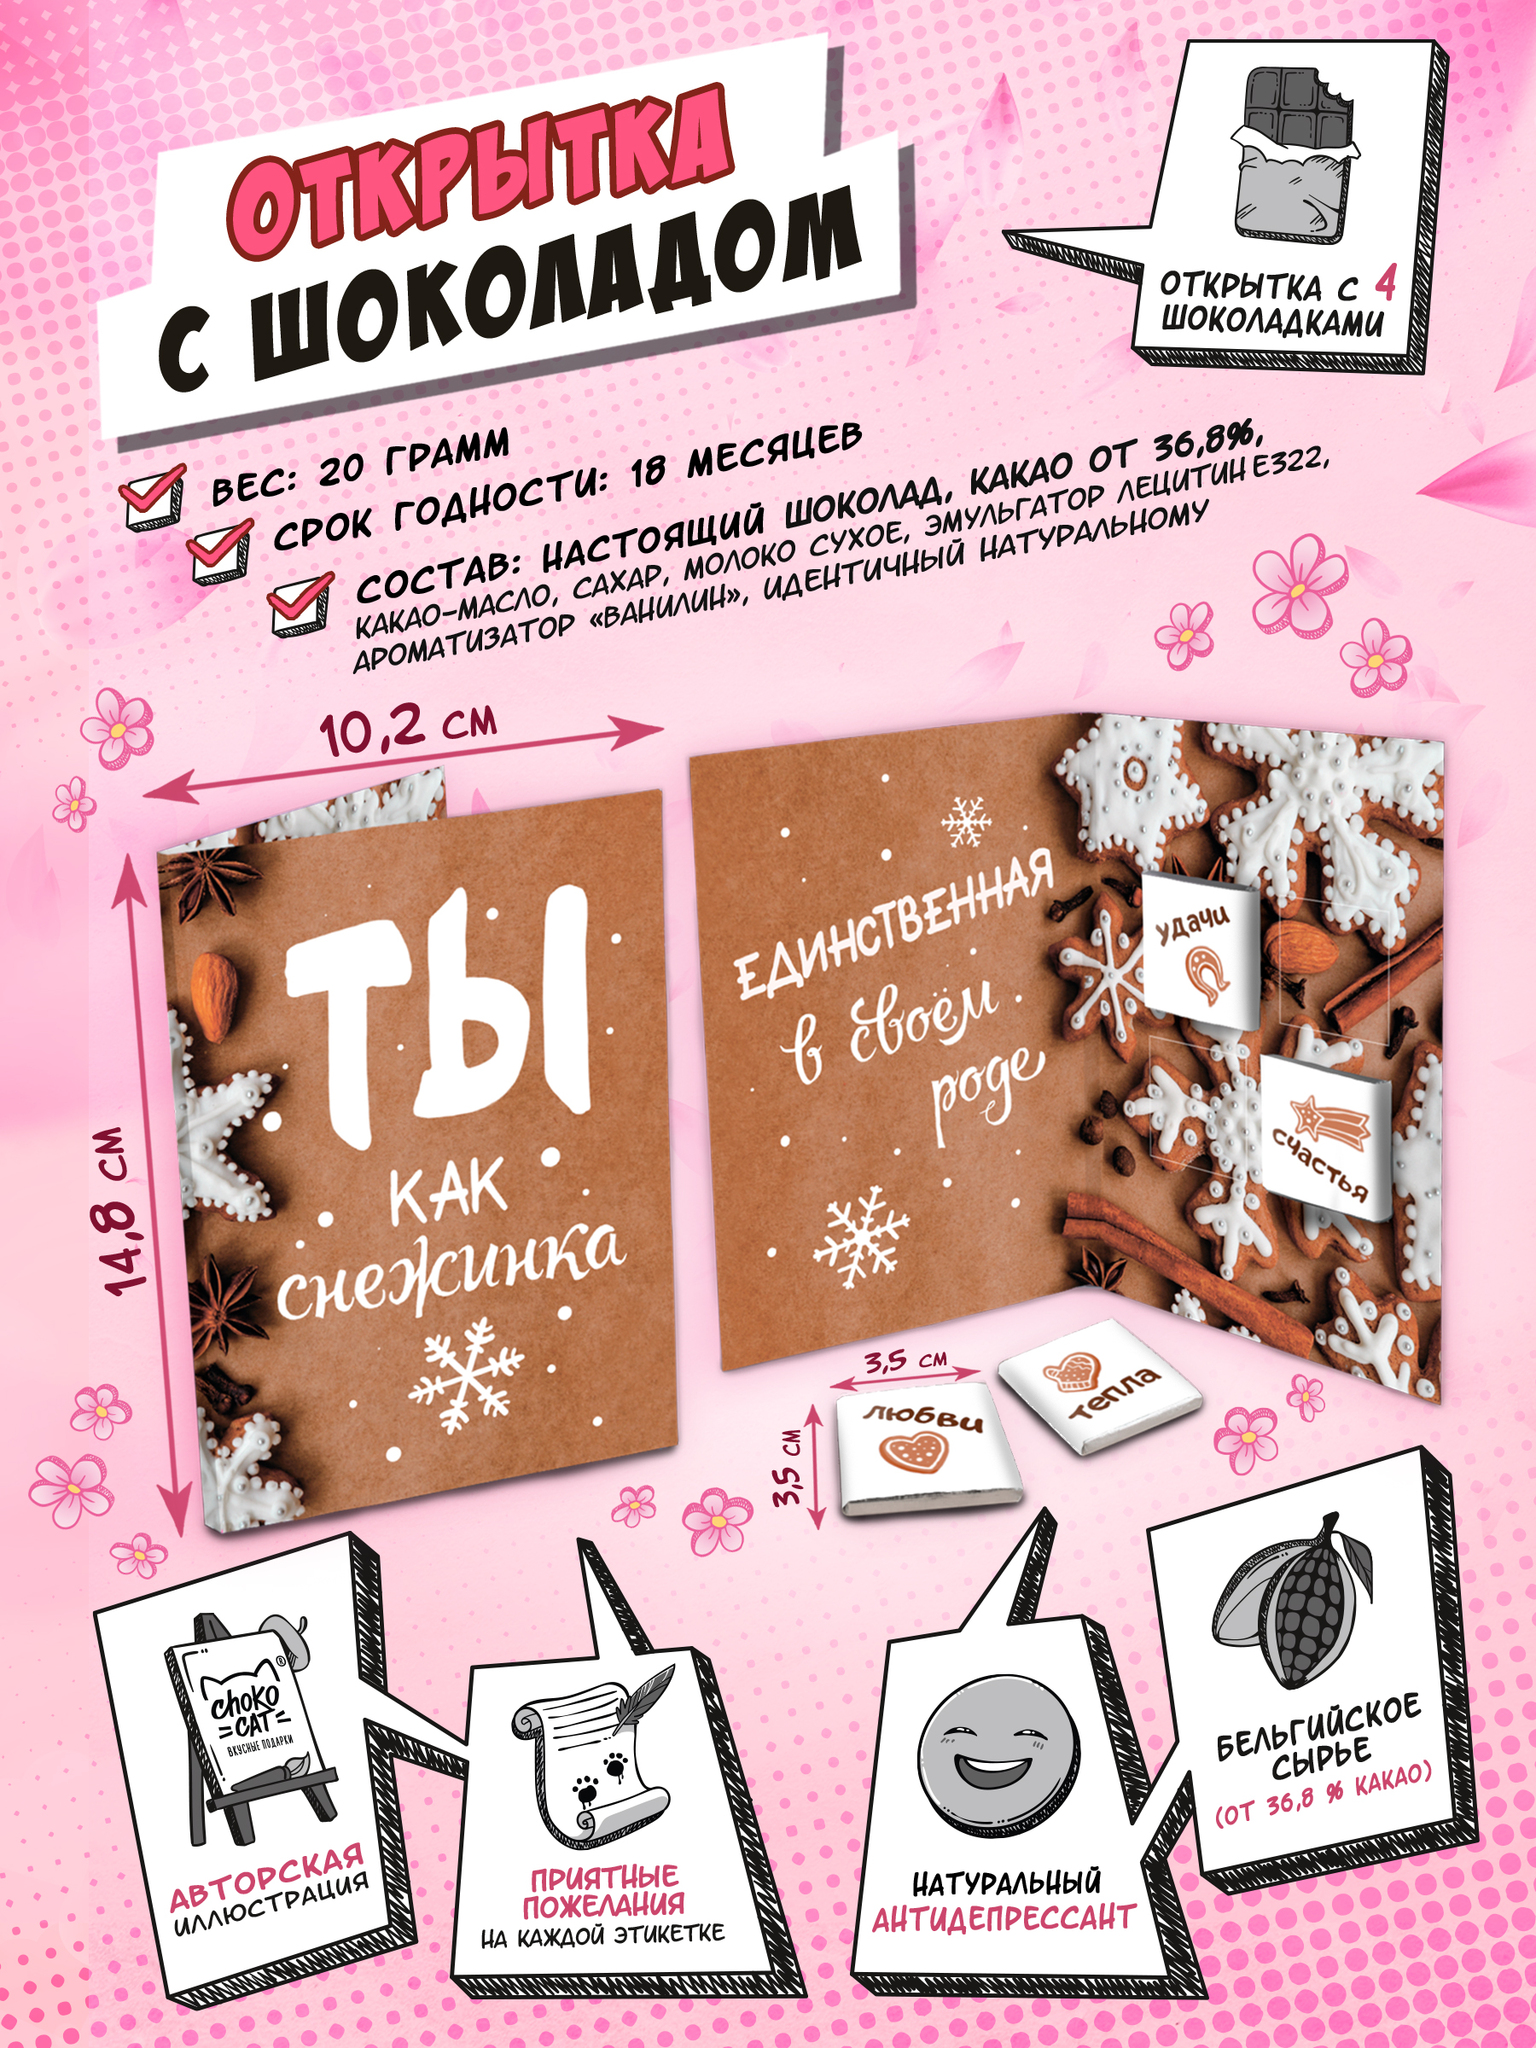 Порционный сахар: купить оптом в Москве по цене производителя